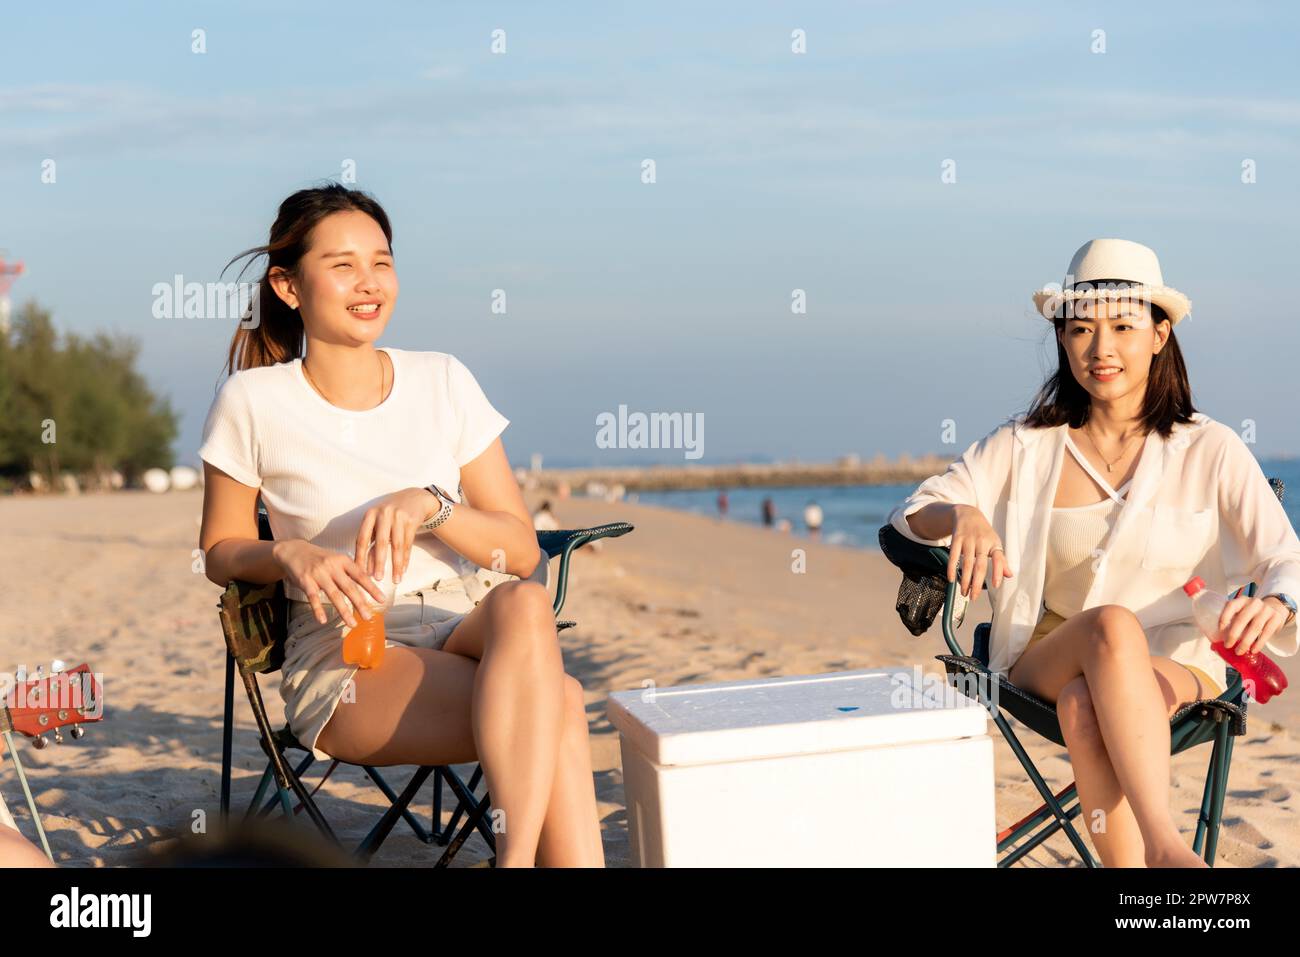 Glückliche Freunde mit Getränken im Camp und lachen zusammen in Urlaub am Sandstrand in der Nähe Camping Zelt Urlaubszeit bei Sonnenuntergang, Junge asiatische Gruppe Frau A Stockfoto